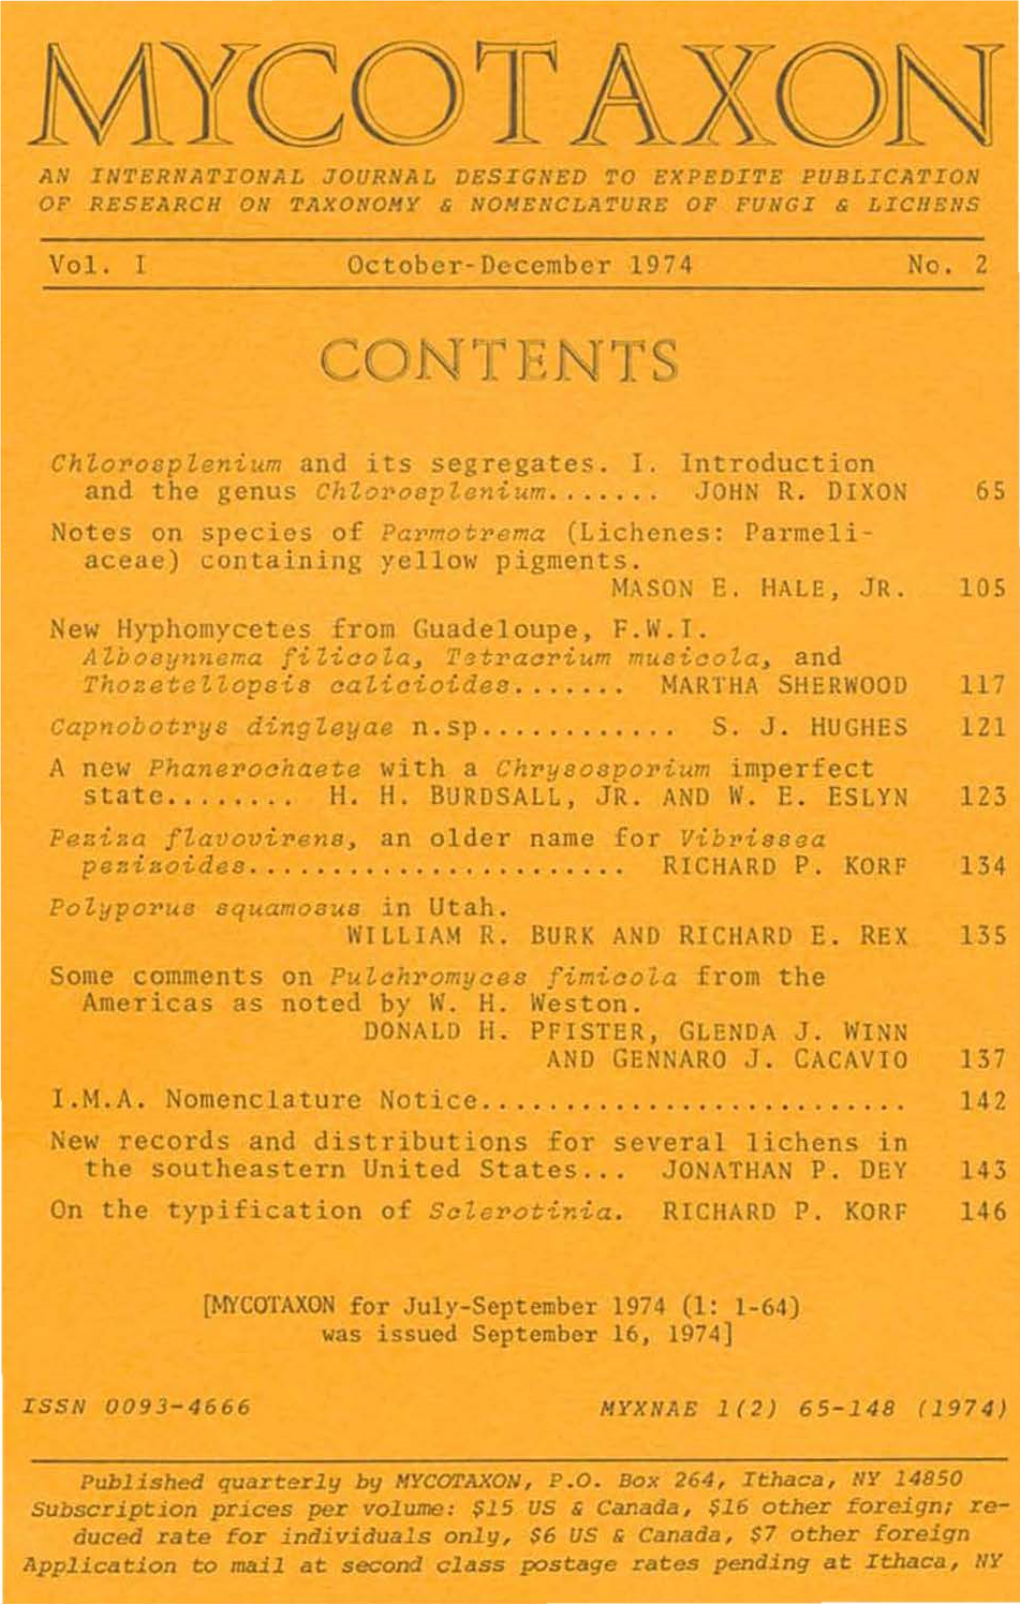 Vol. I October-December 1974 No. 2 Chzorosplenium and Its Segregates